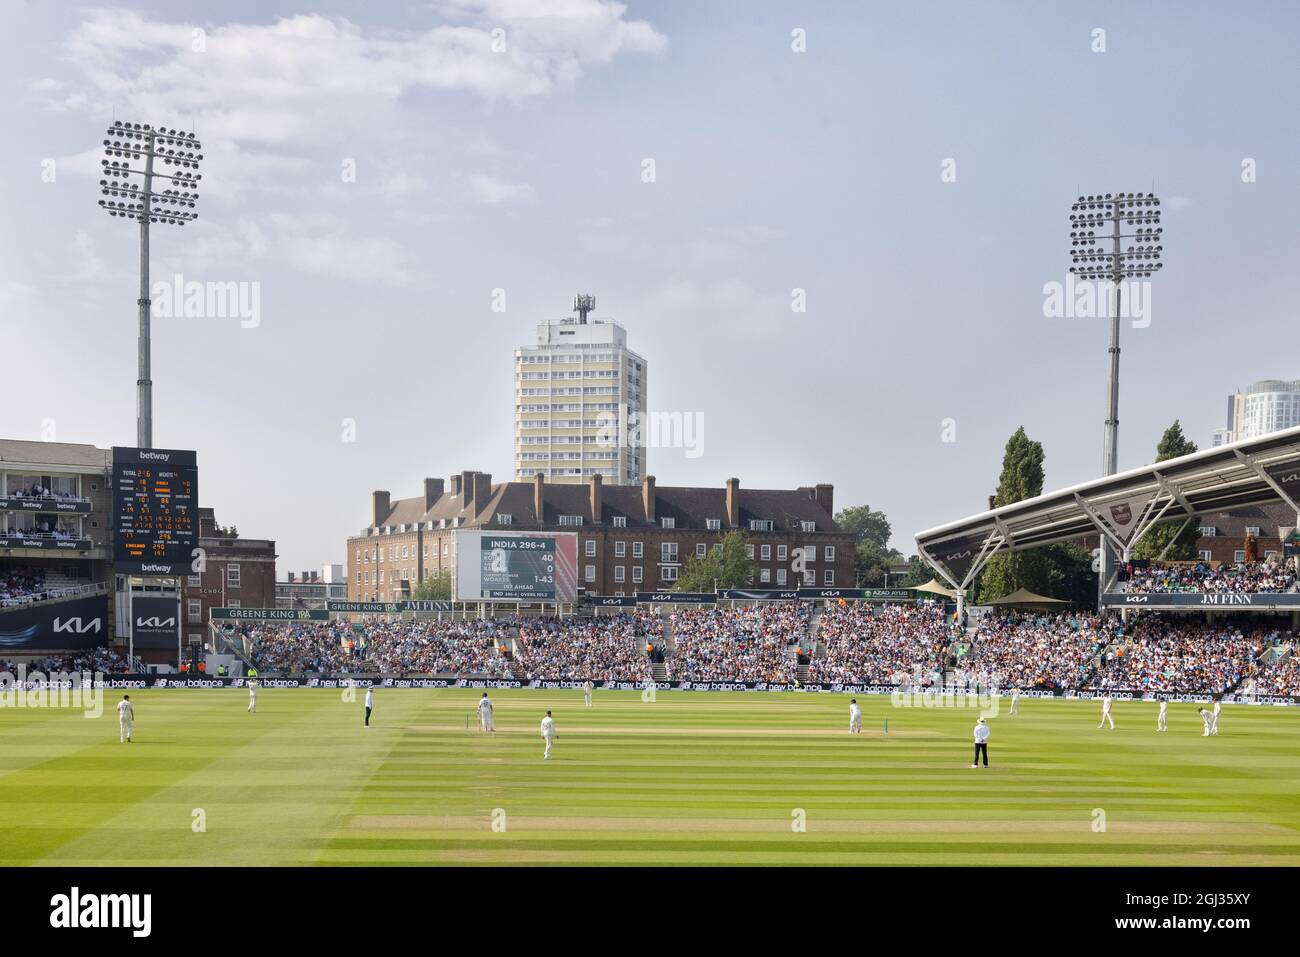 Críquet en Inglaterra; el campo de cricket Oval, o Kia Oval, julio de 2021, Inglaterra contra India, visto por multitudes de aficionados en verano, el Oval, Londres Reino Unido Foto de stock